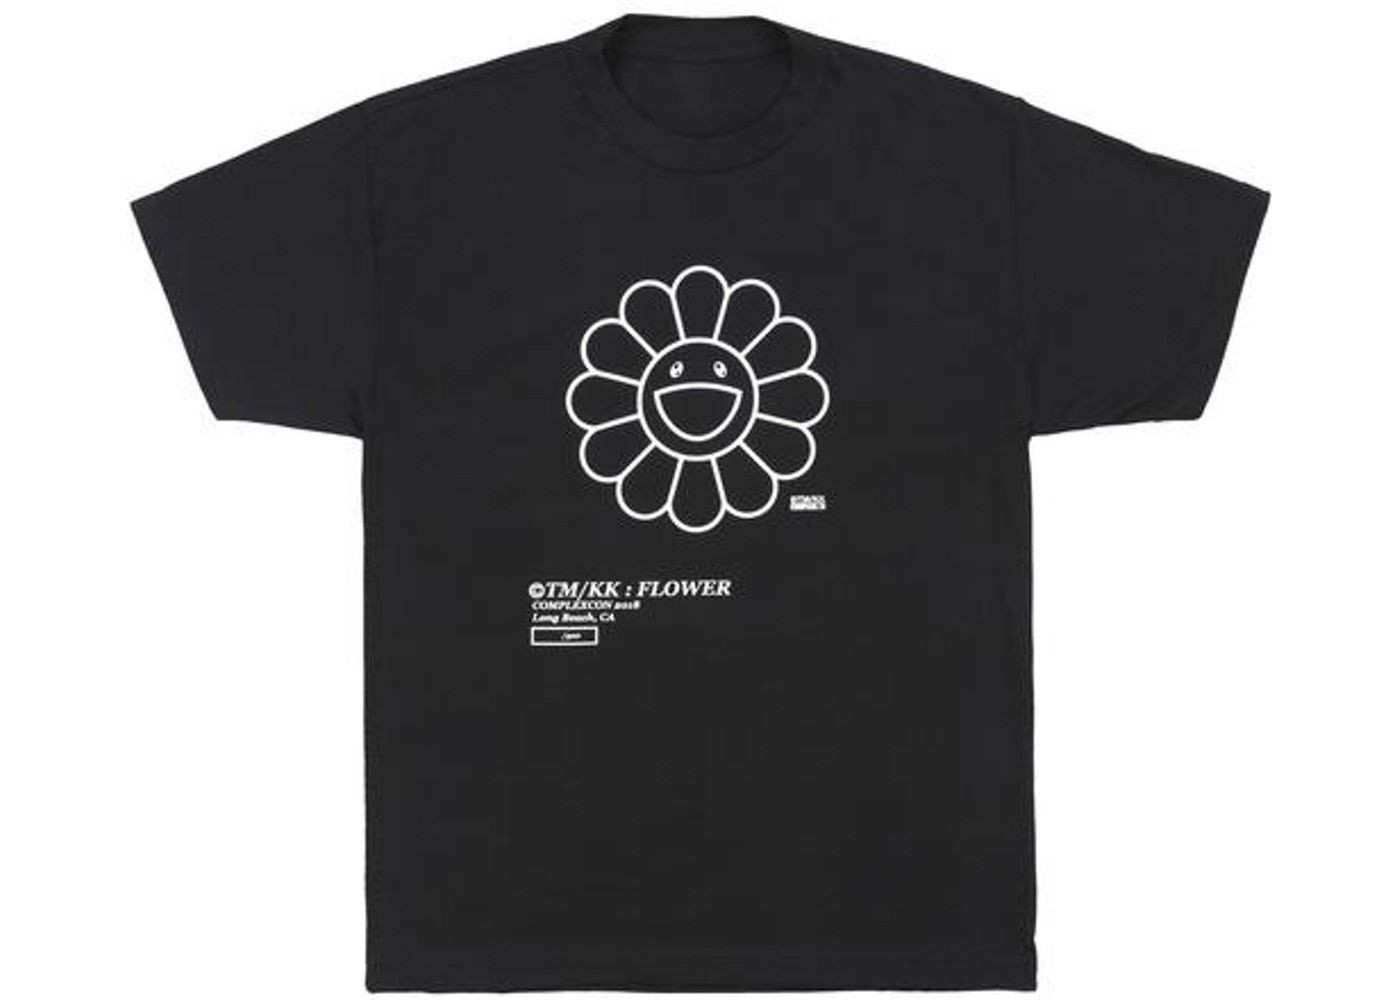 Murakami Flower Tee "Black"